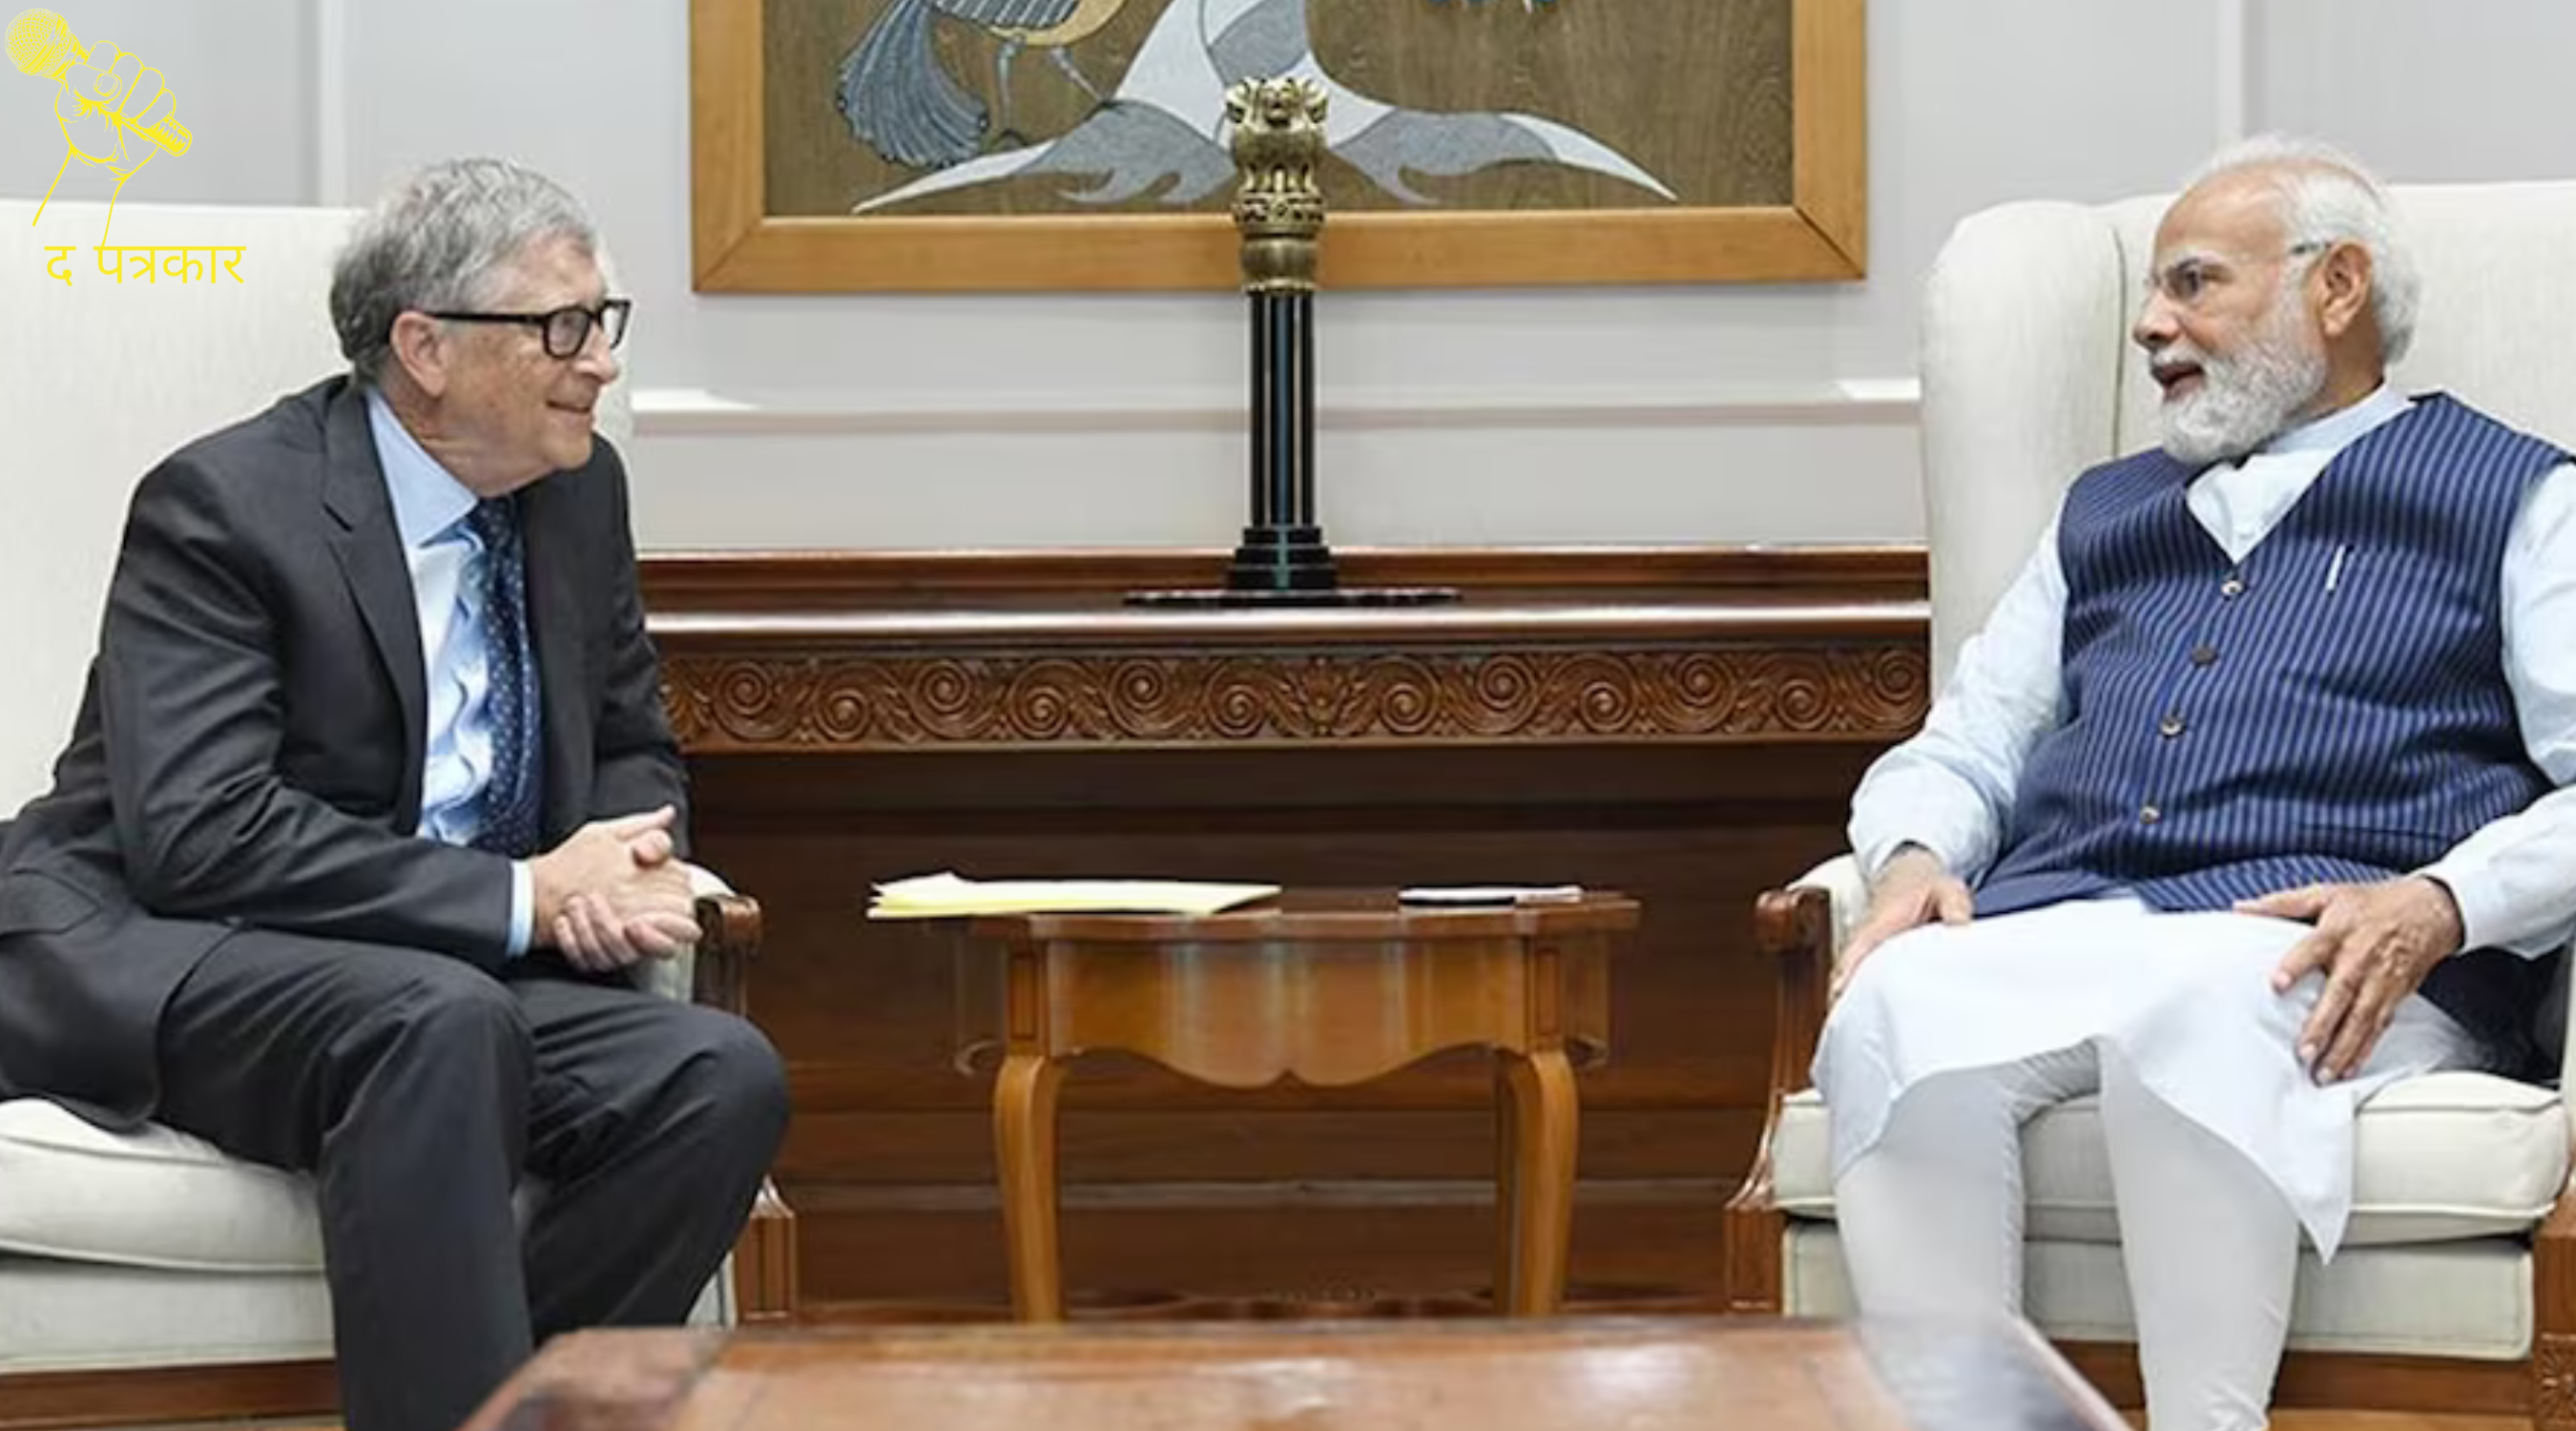 PM मोदी और बिल गेट्स की बातचीत का वीडियो आया सामने